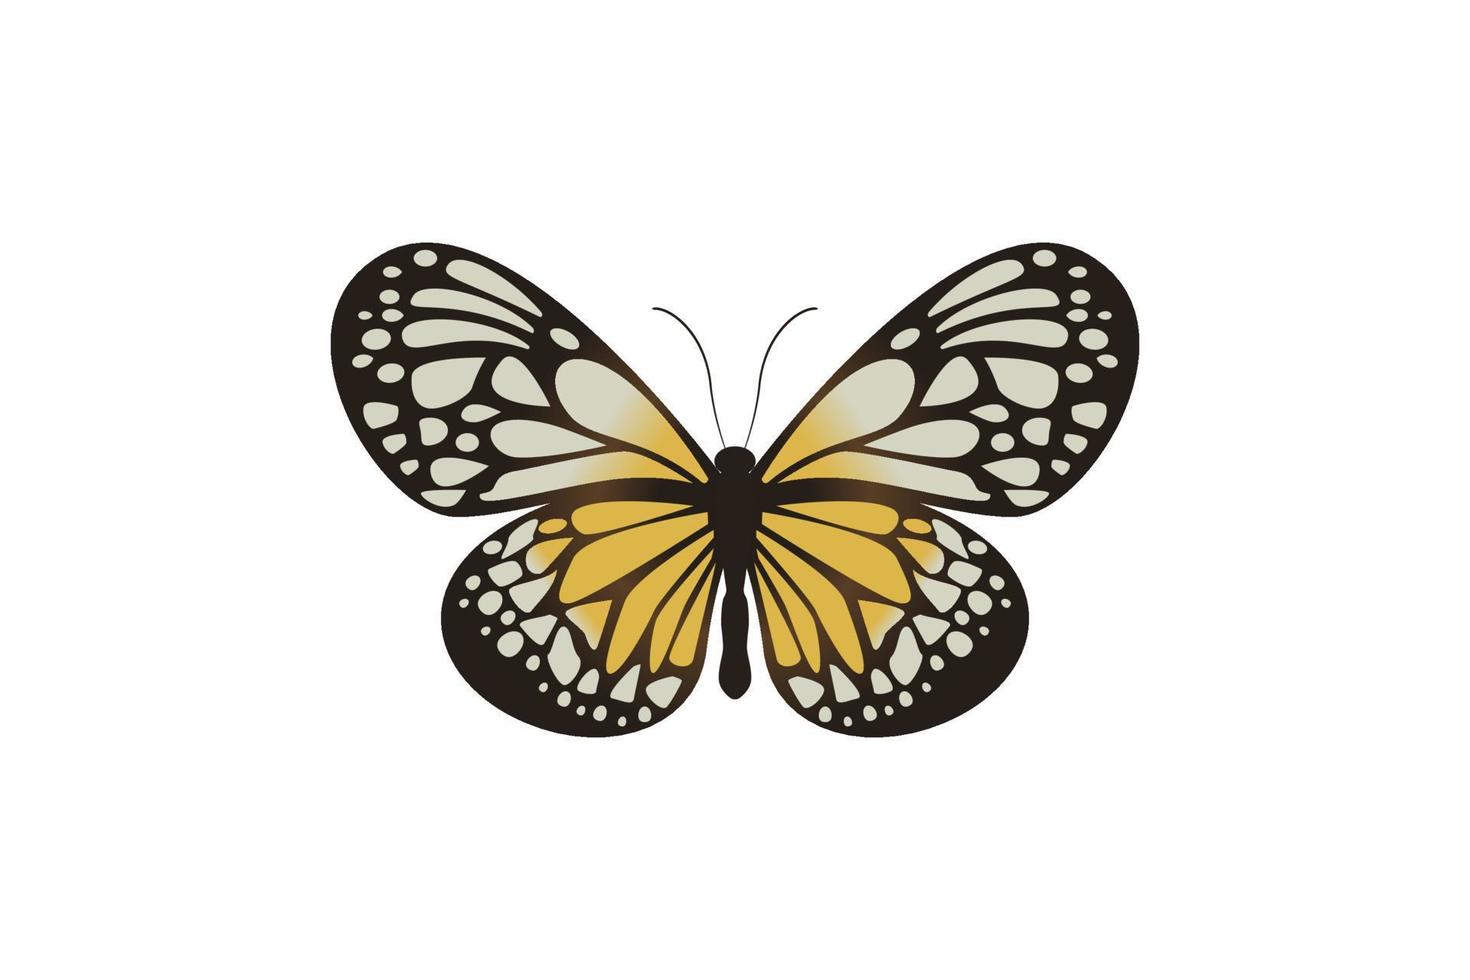 gráfico vetorial de borboleta voadora em uma vista superior isolada no fundo branco. vetor